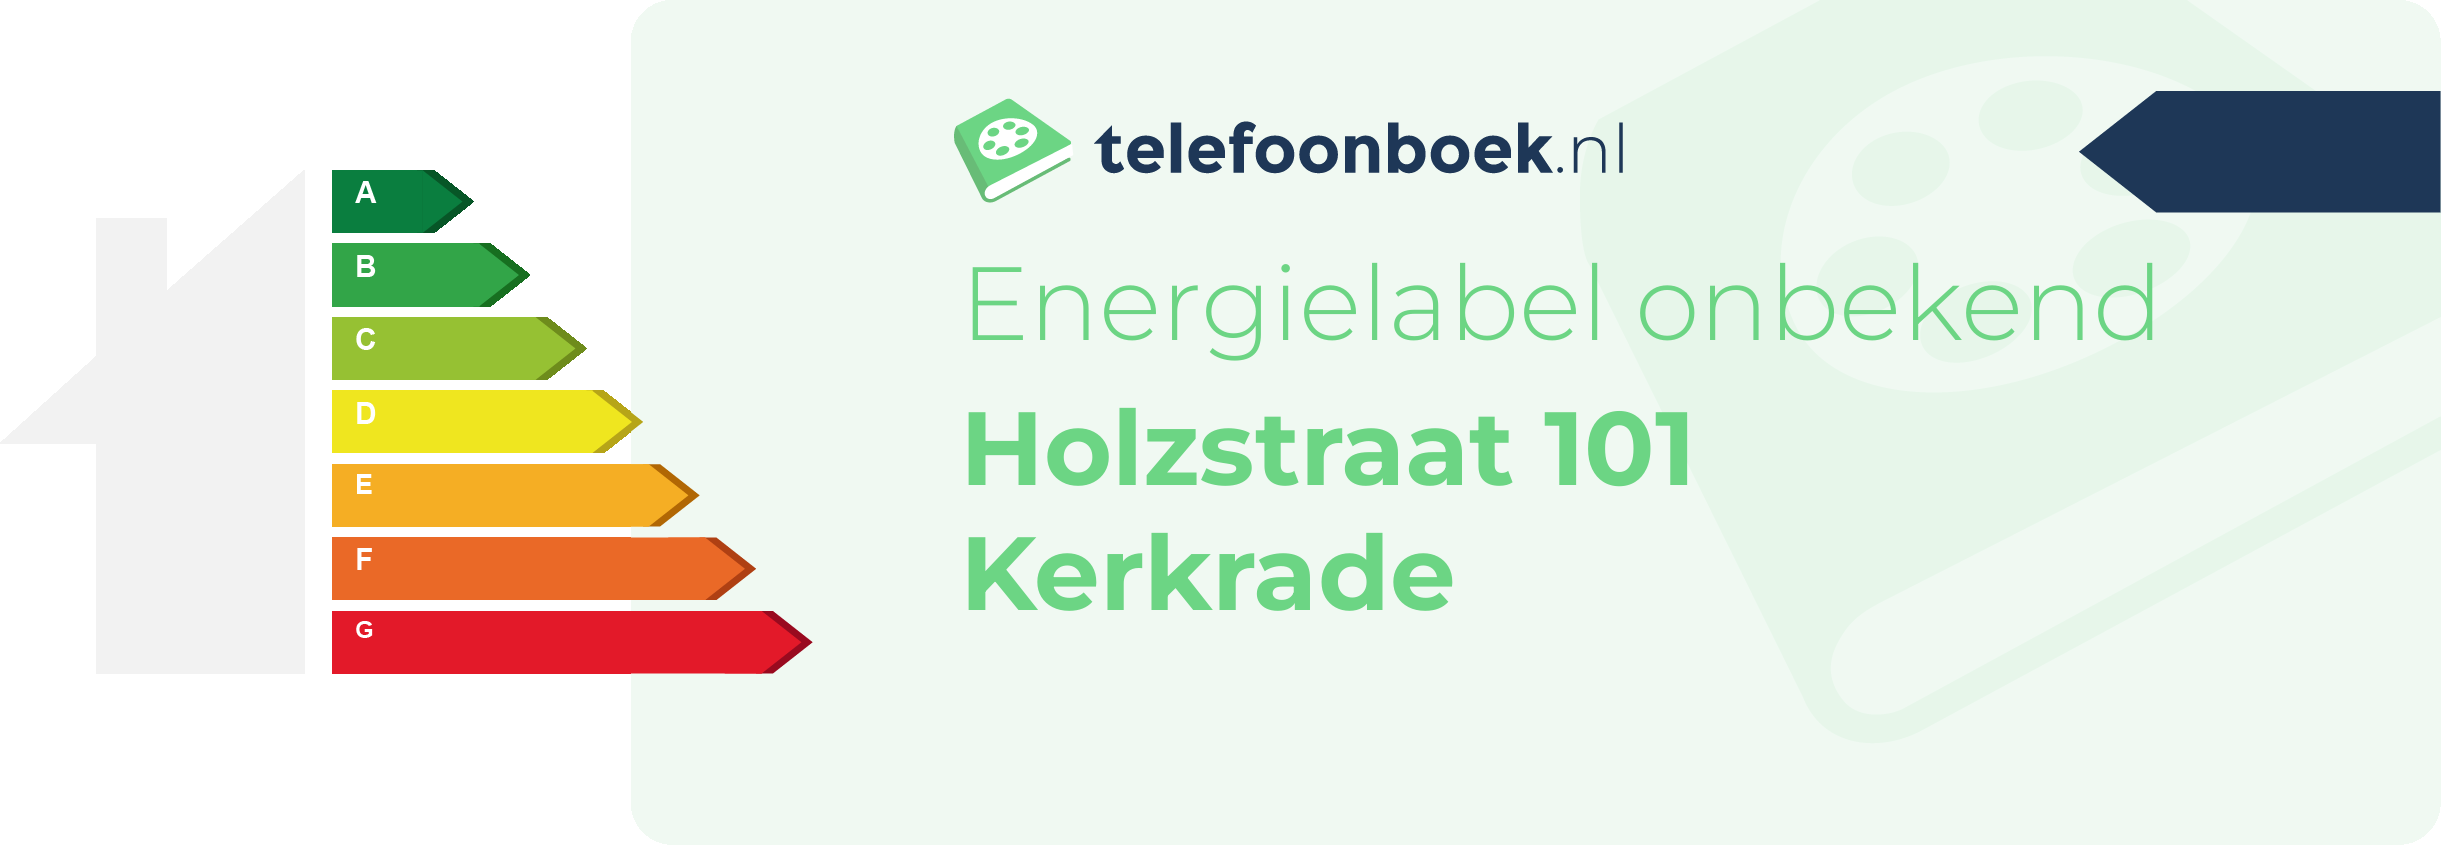 Energielabel Holzstraat 101 Kerkrade